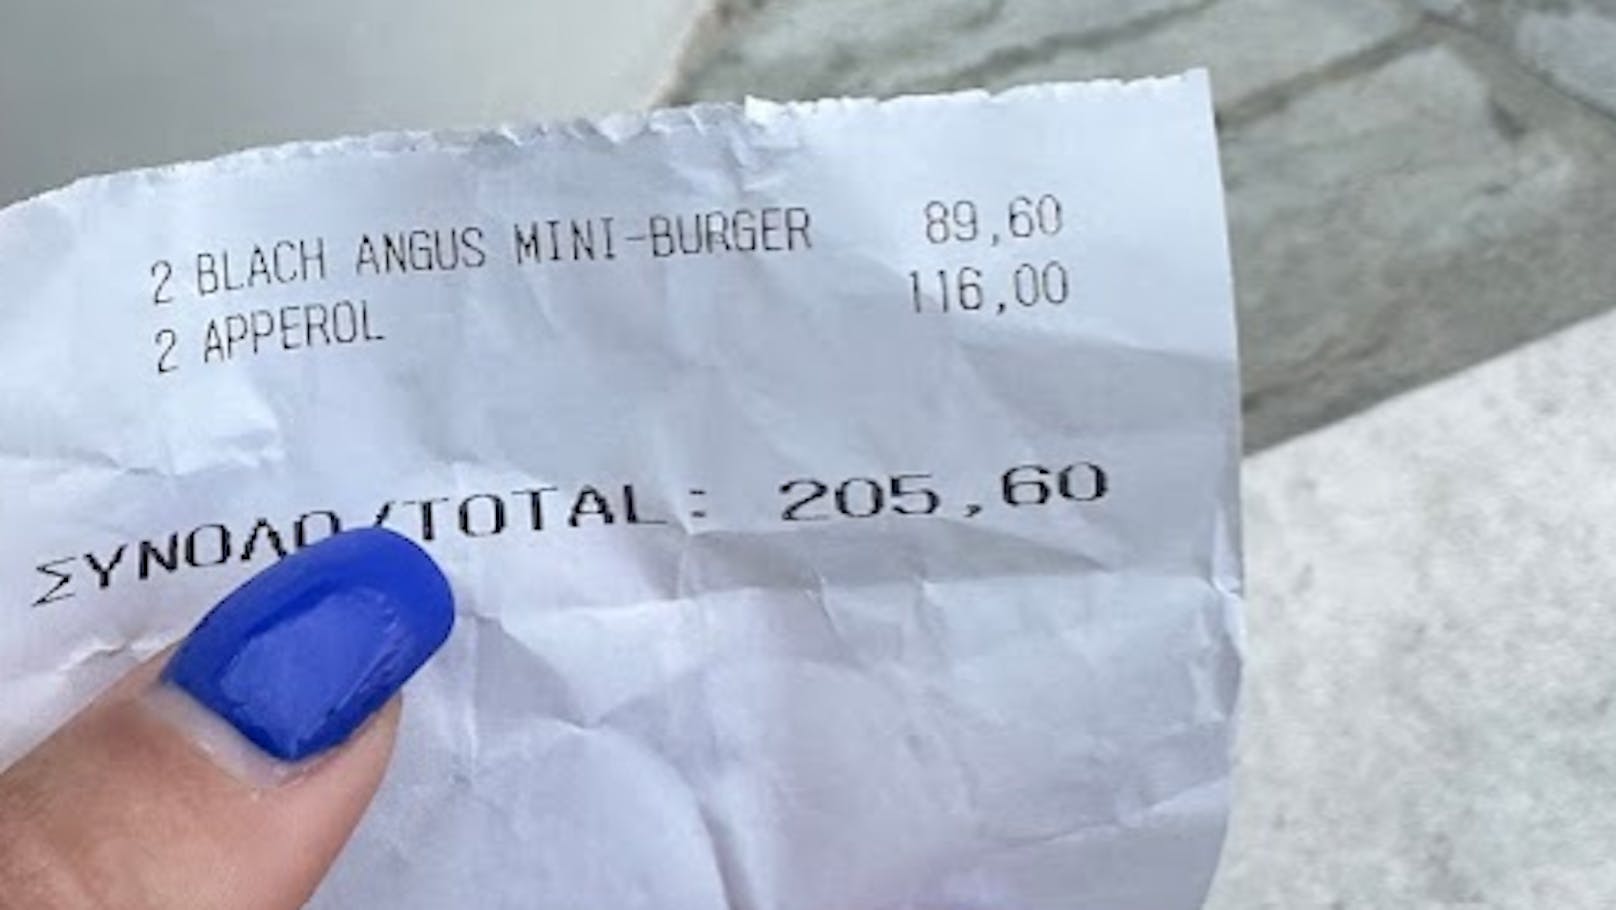 Zwei Mini-Burger und zwei Gläser Aperol kamen dem Paar über 200 Euro zu stehen.